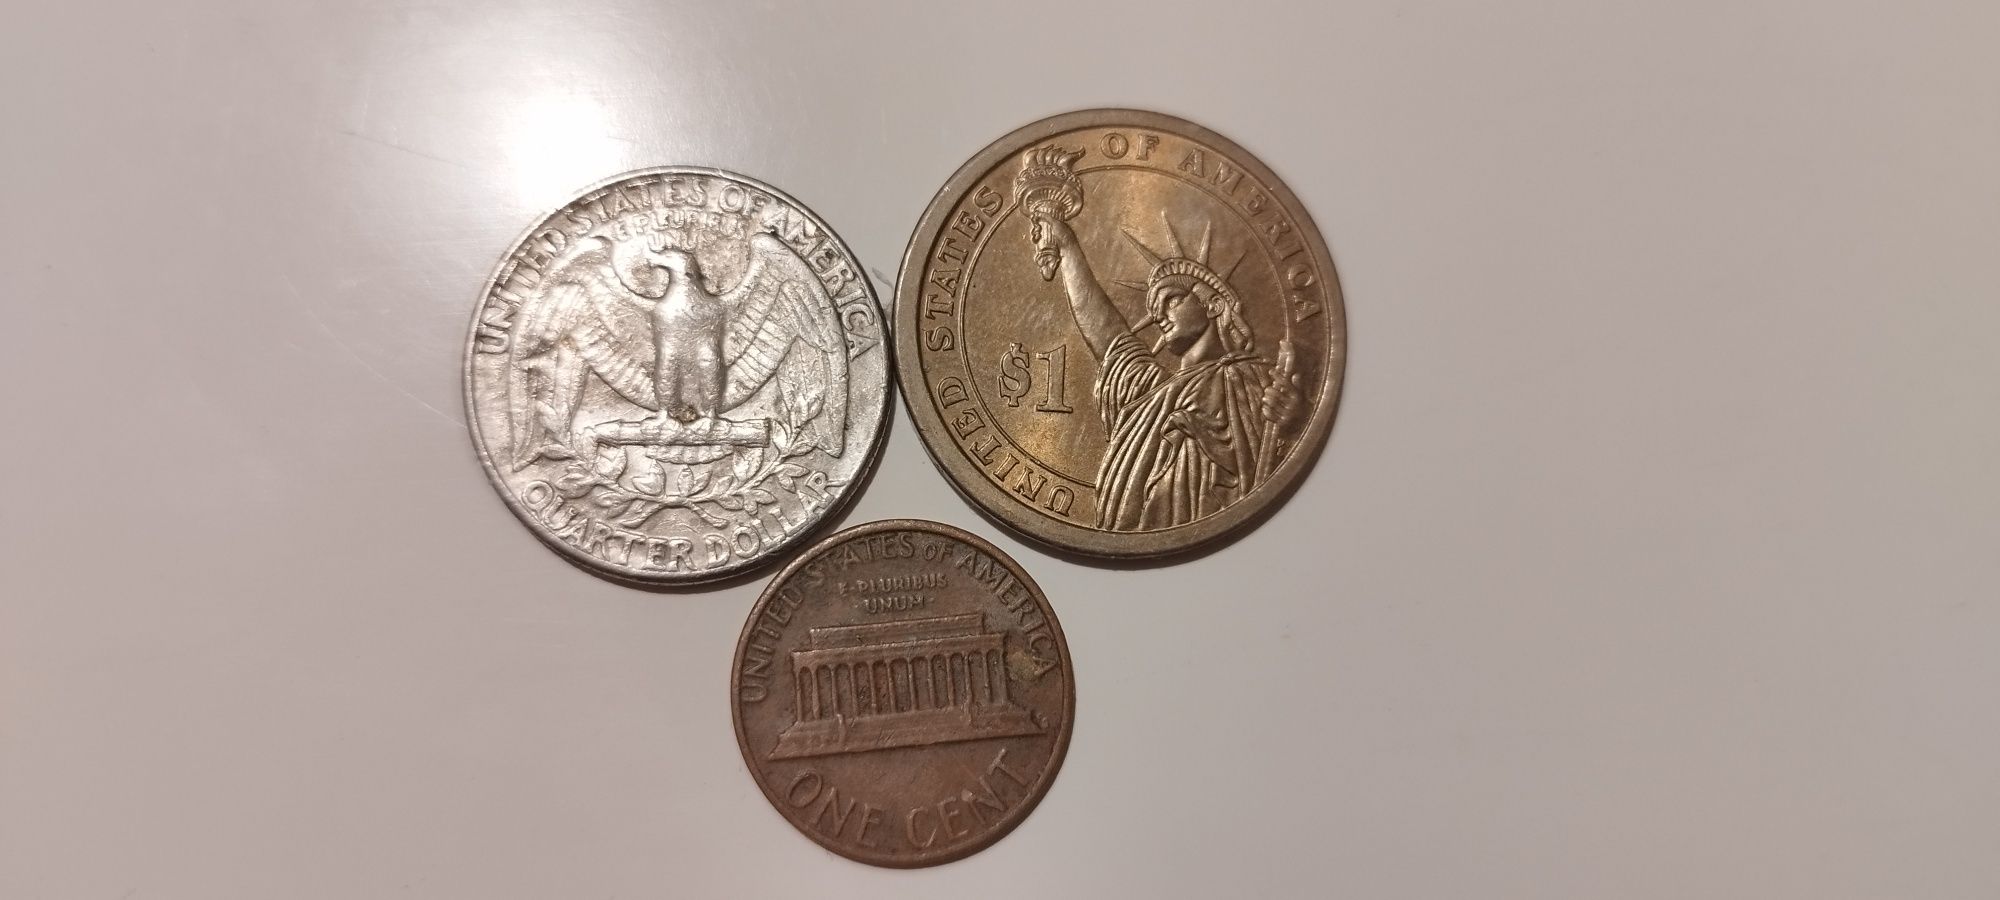 Monede unele mai vechi